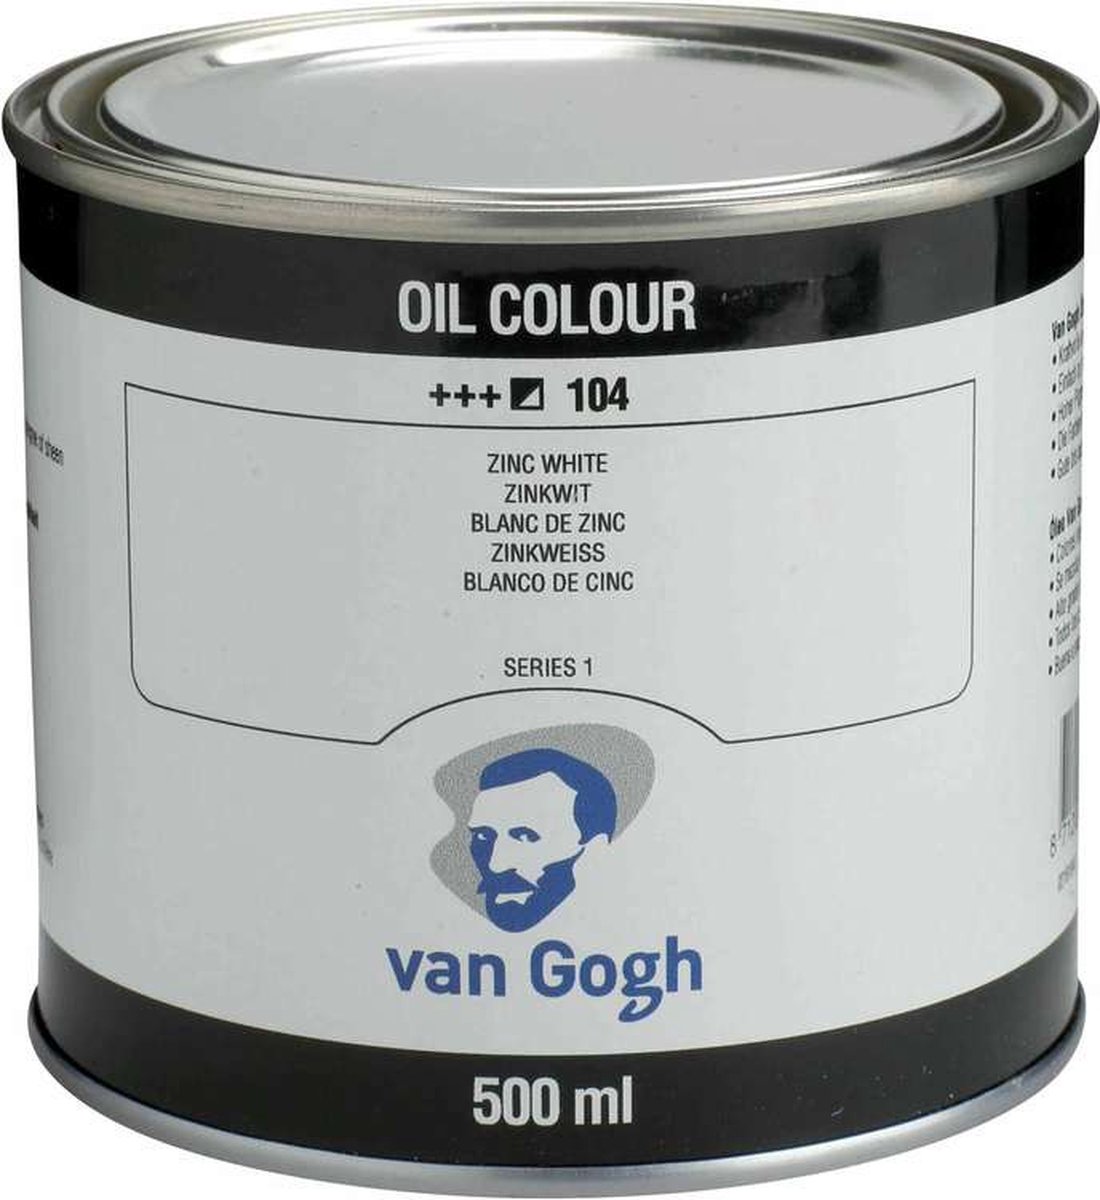 Van Gogh Olieverf Blik 500 ml 104 Zinkwit